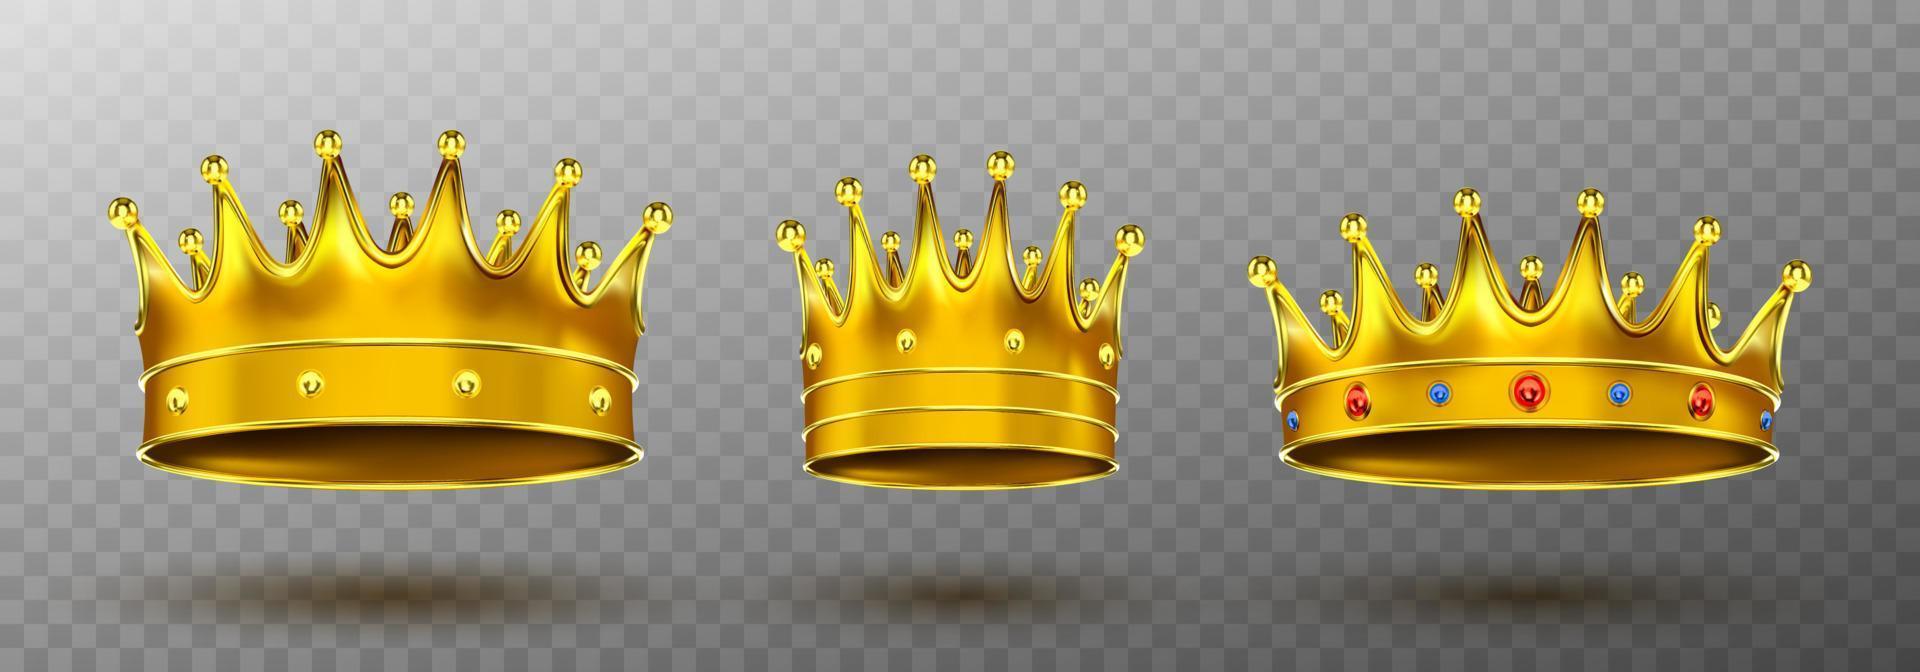 couronnes d'or pour le symbole de la monarchie du roi ou de la reine vecteur